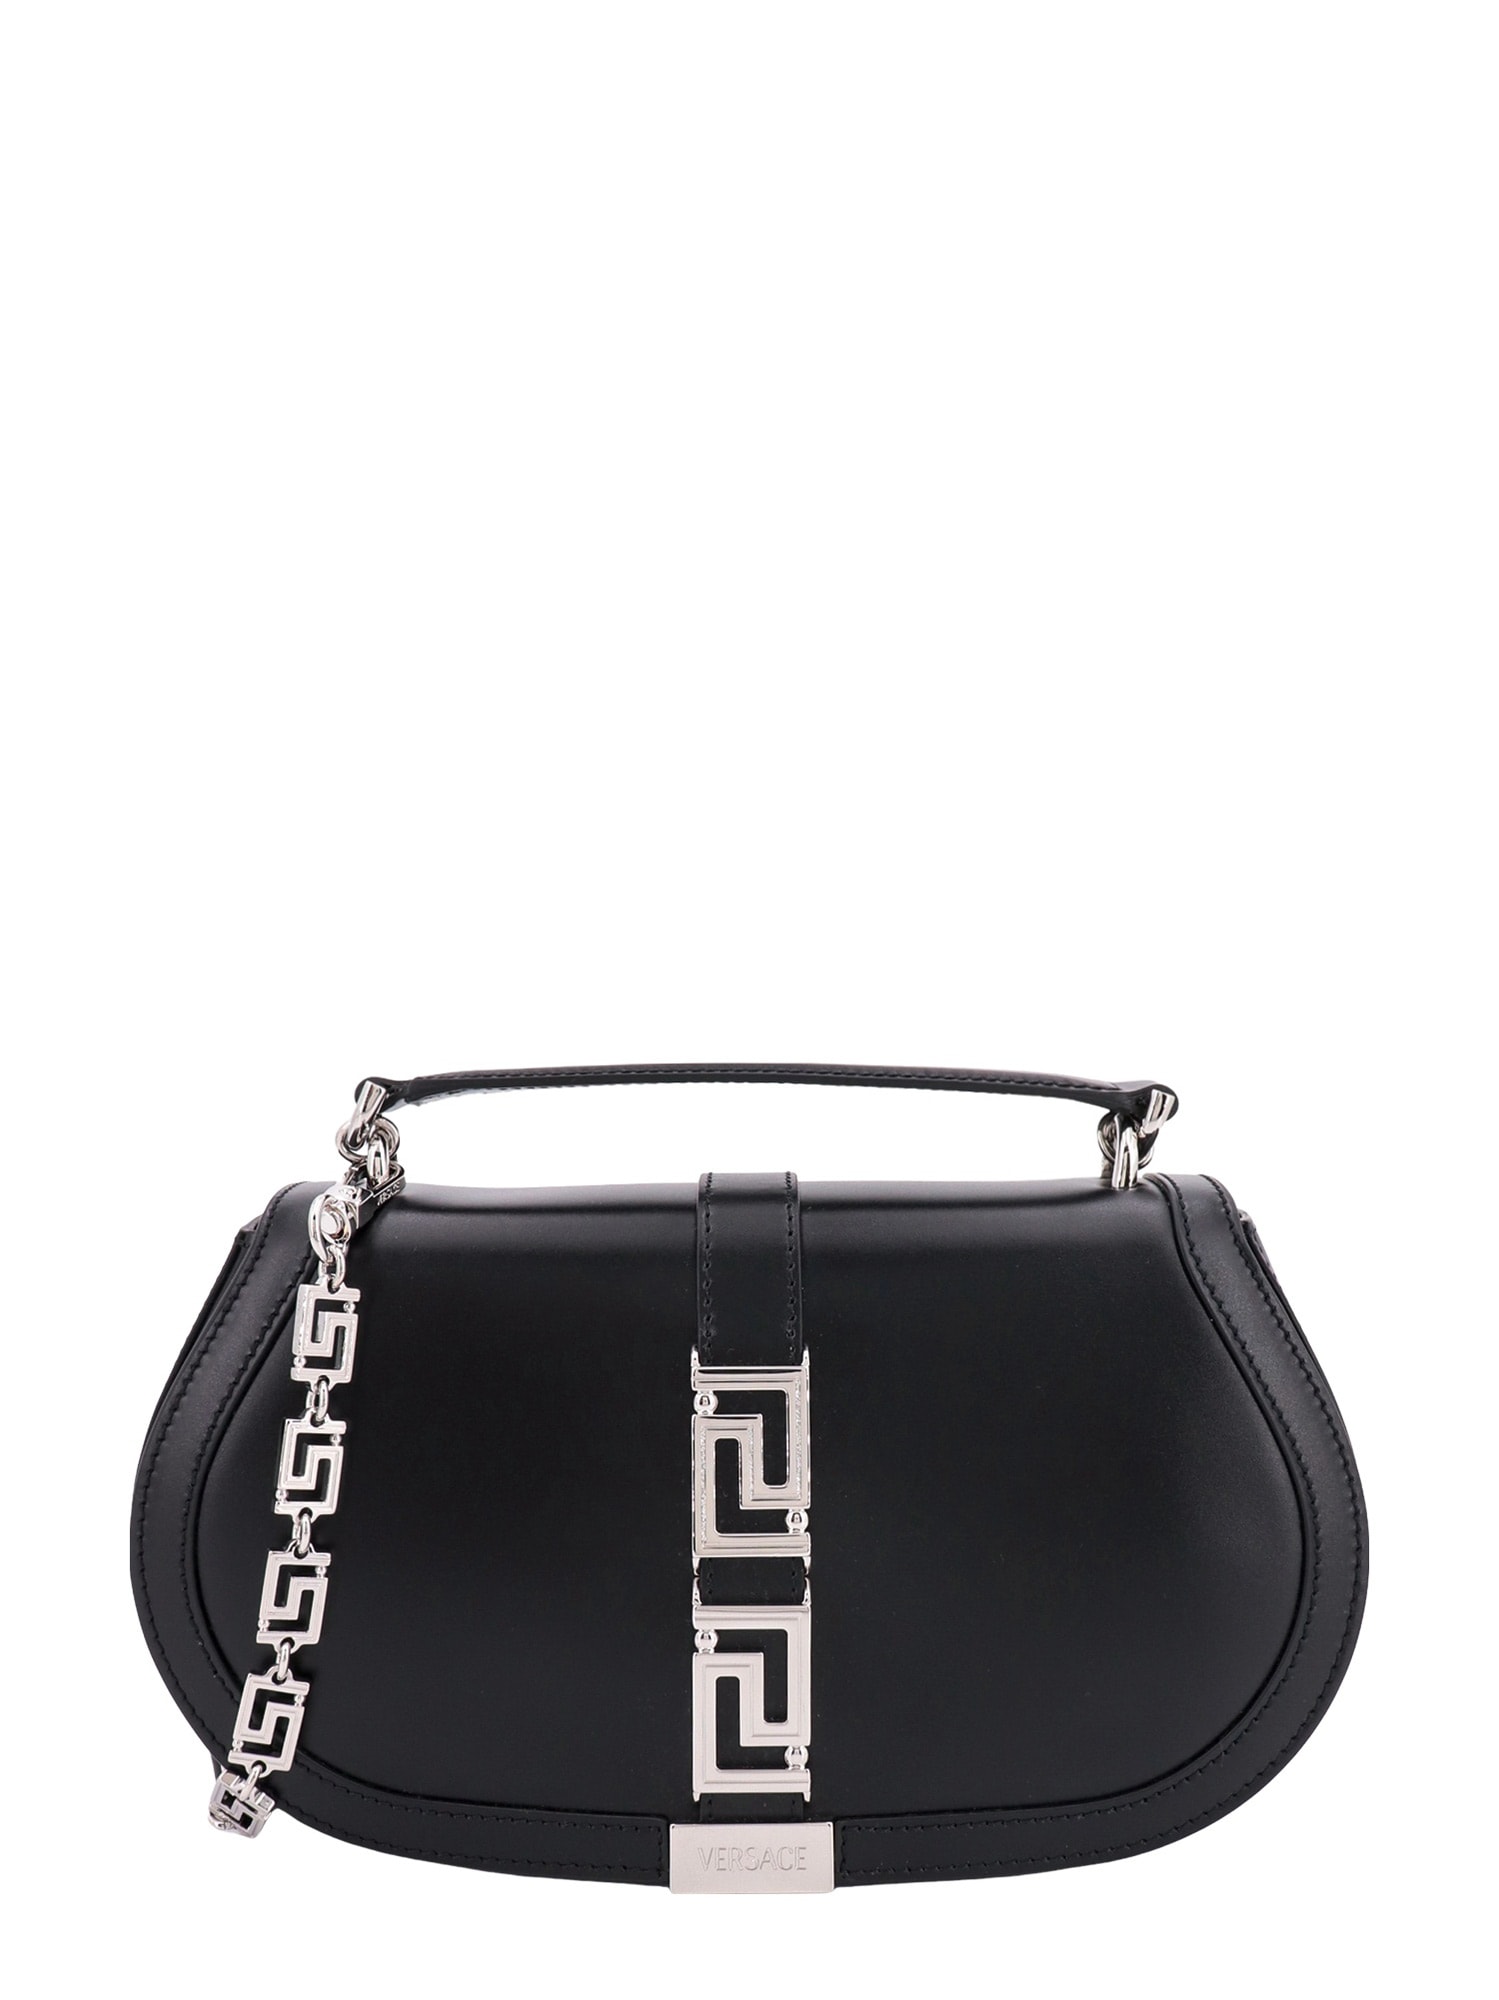 Versace Greca Goddess Handbag In Black